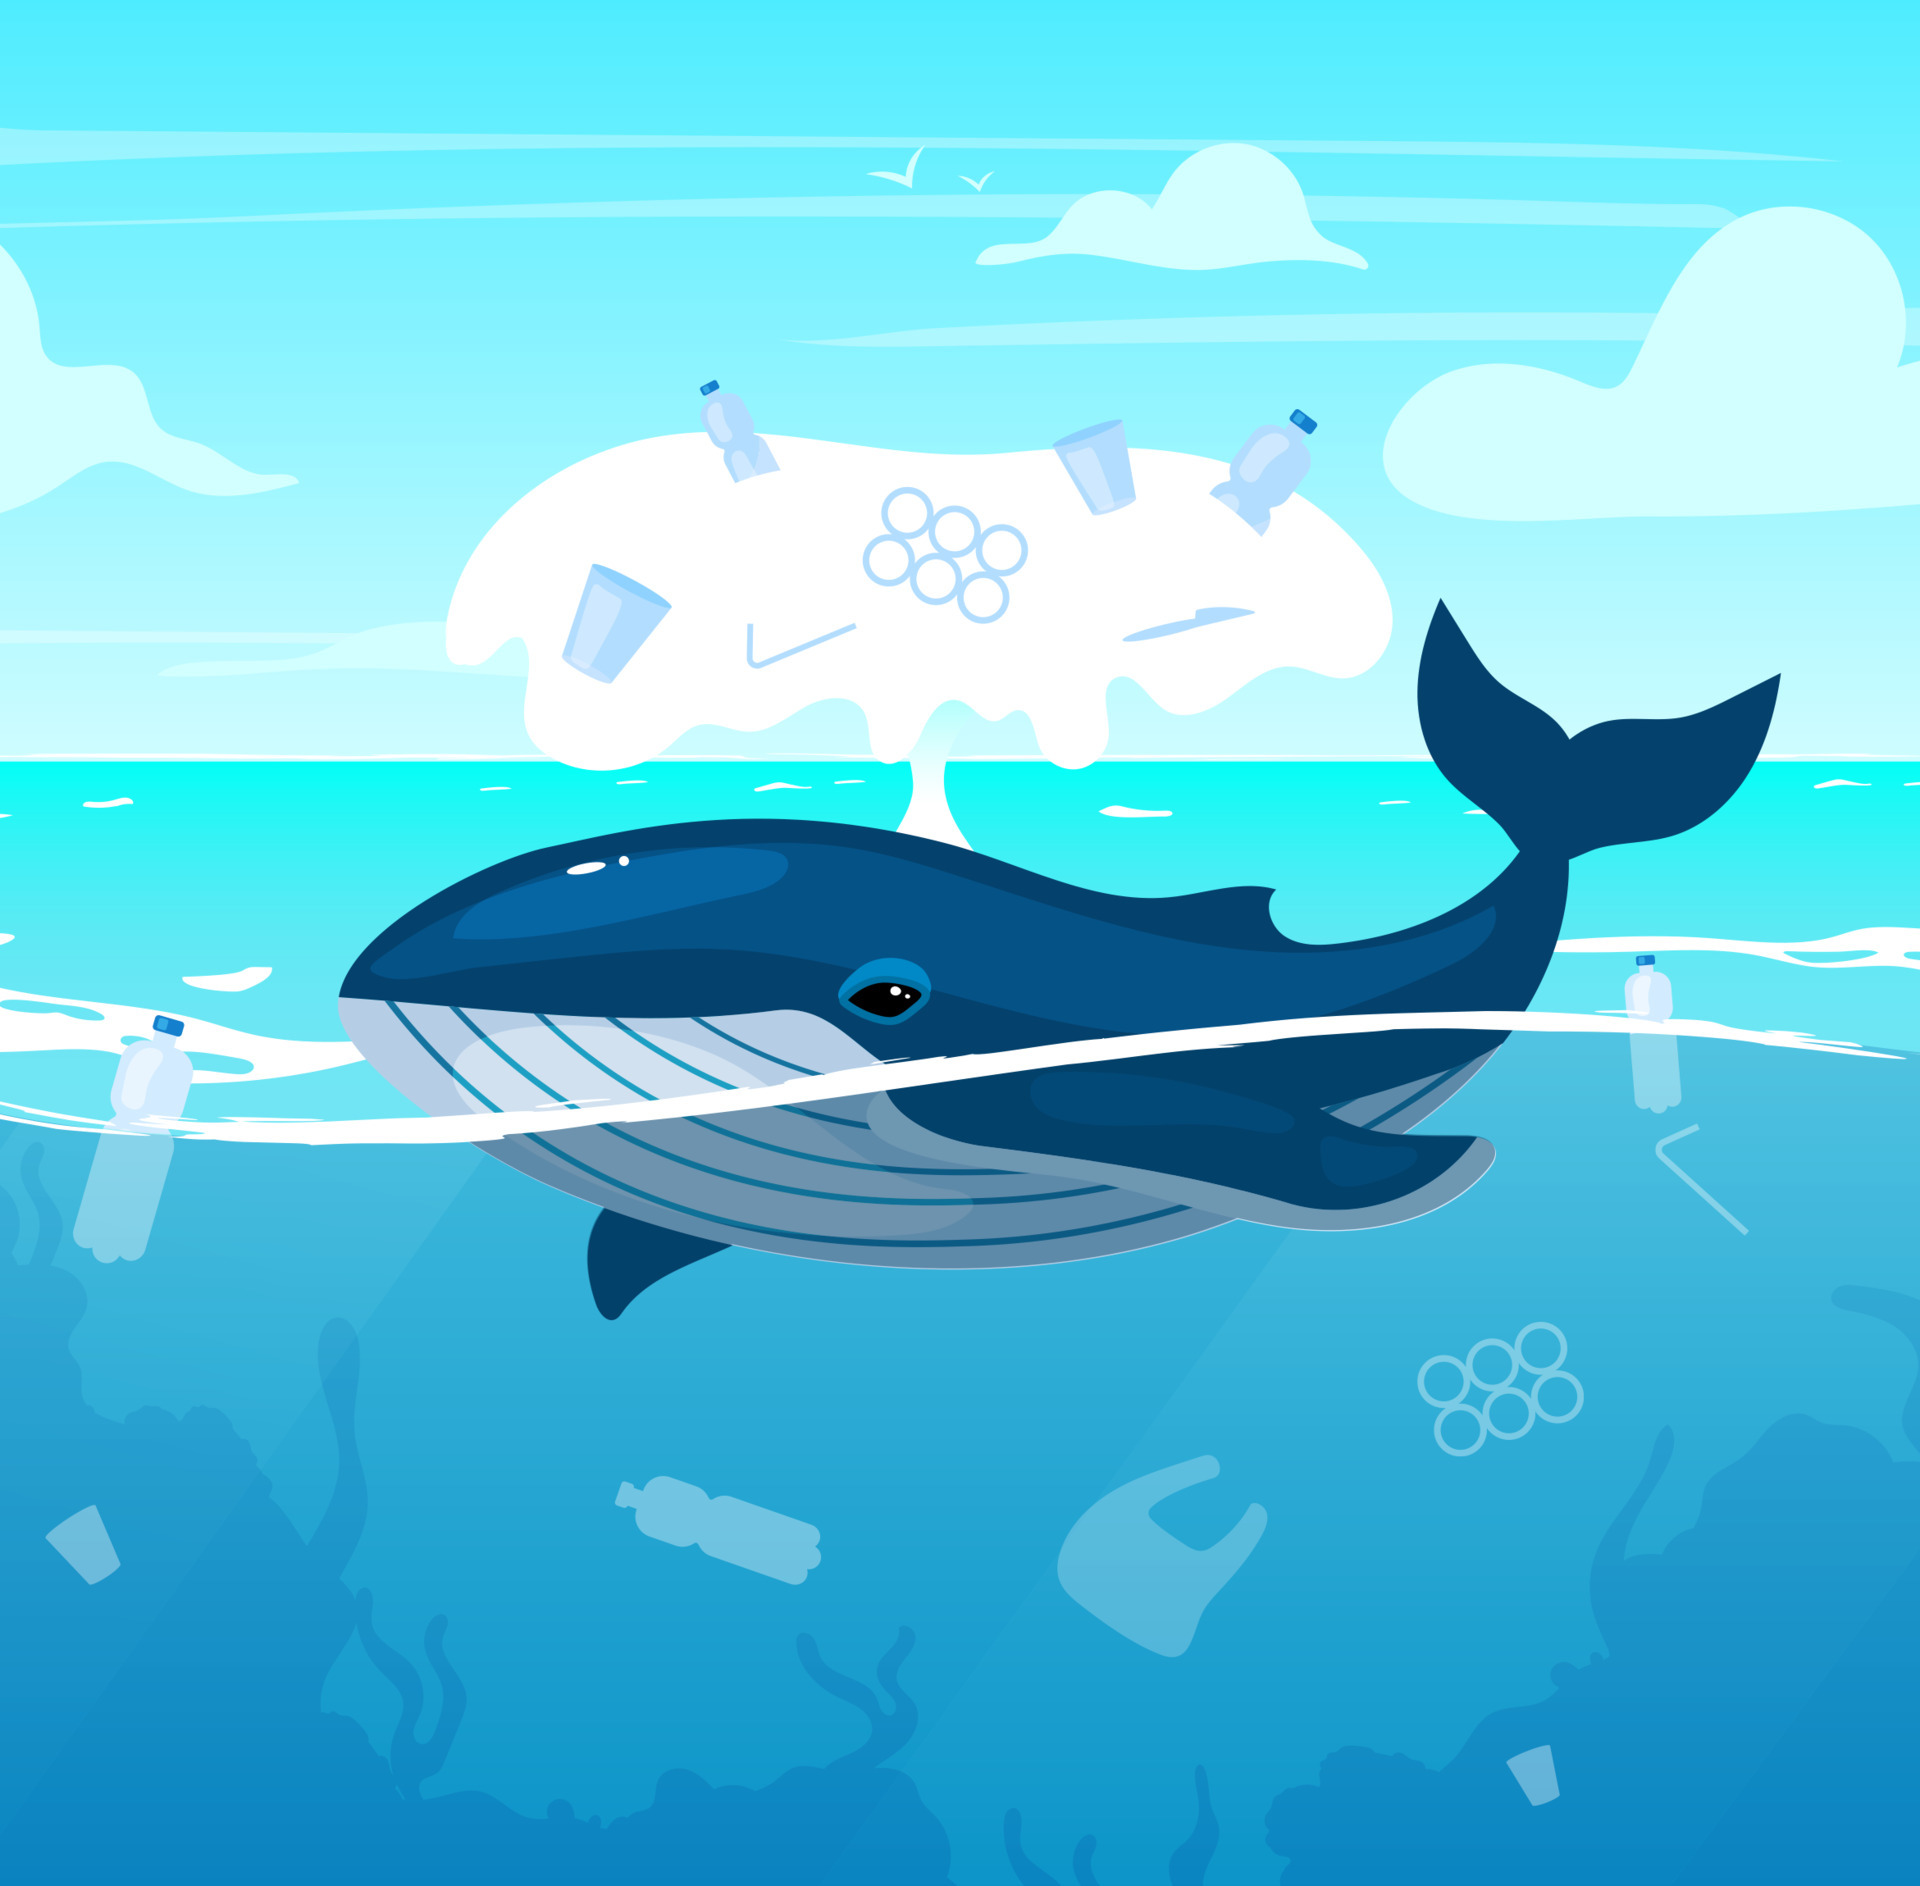 ballena en el océano con ilustración de vector plano de residuos plásticos.  Problema de contaminación ambiental. catástrofe ecológica. contaminación  del agua, daños a la naturaleza. animal marino en el personaje de dibujos